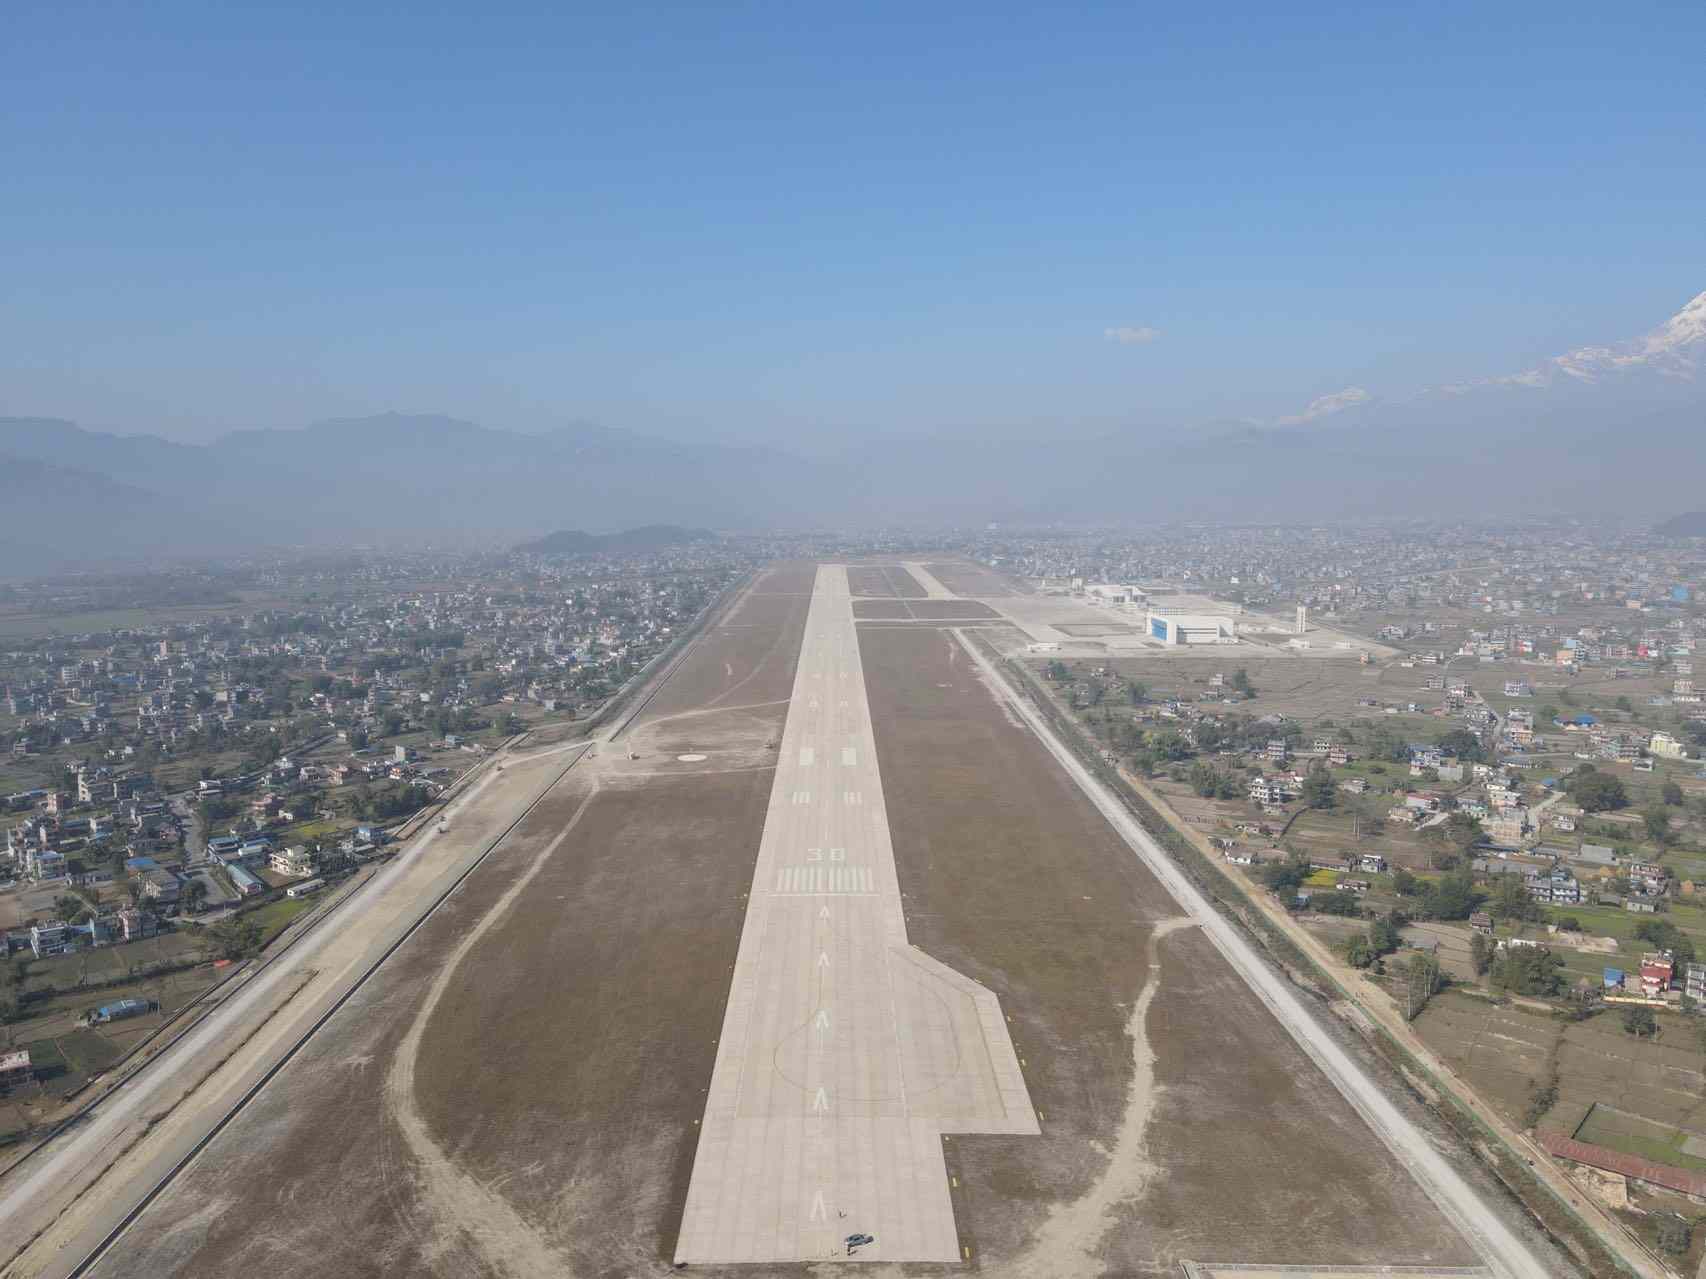 Pokhara Airport Runway1672575603.jpg